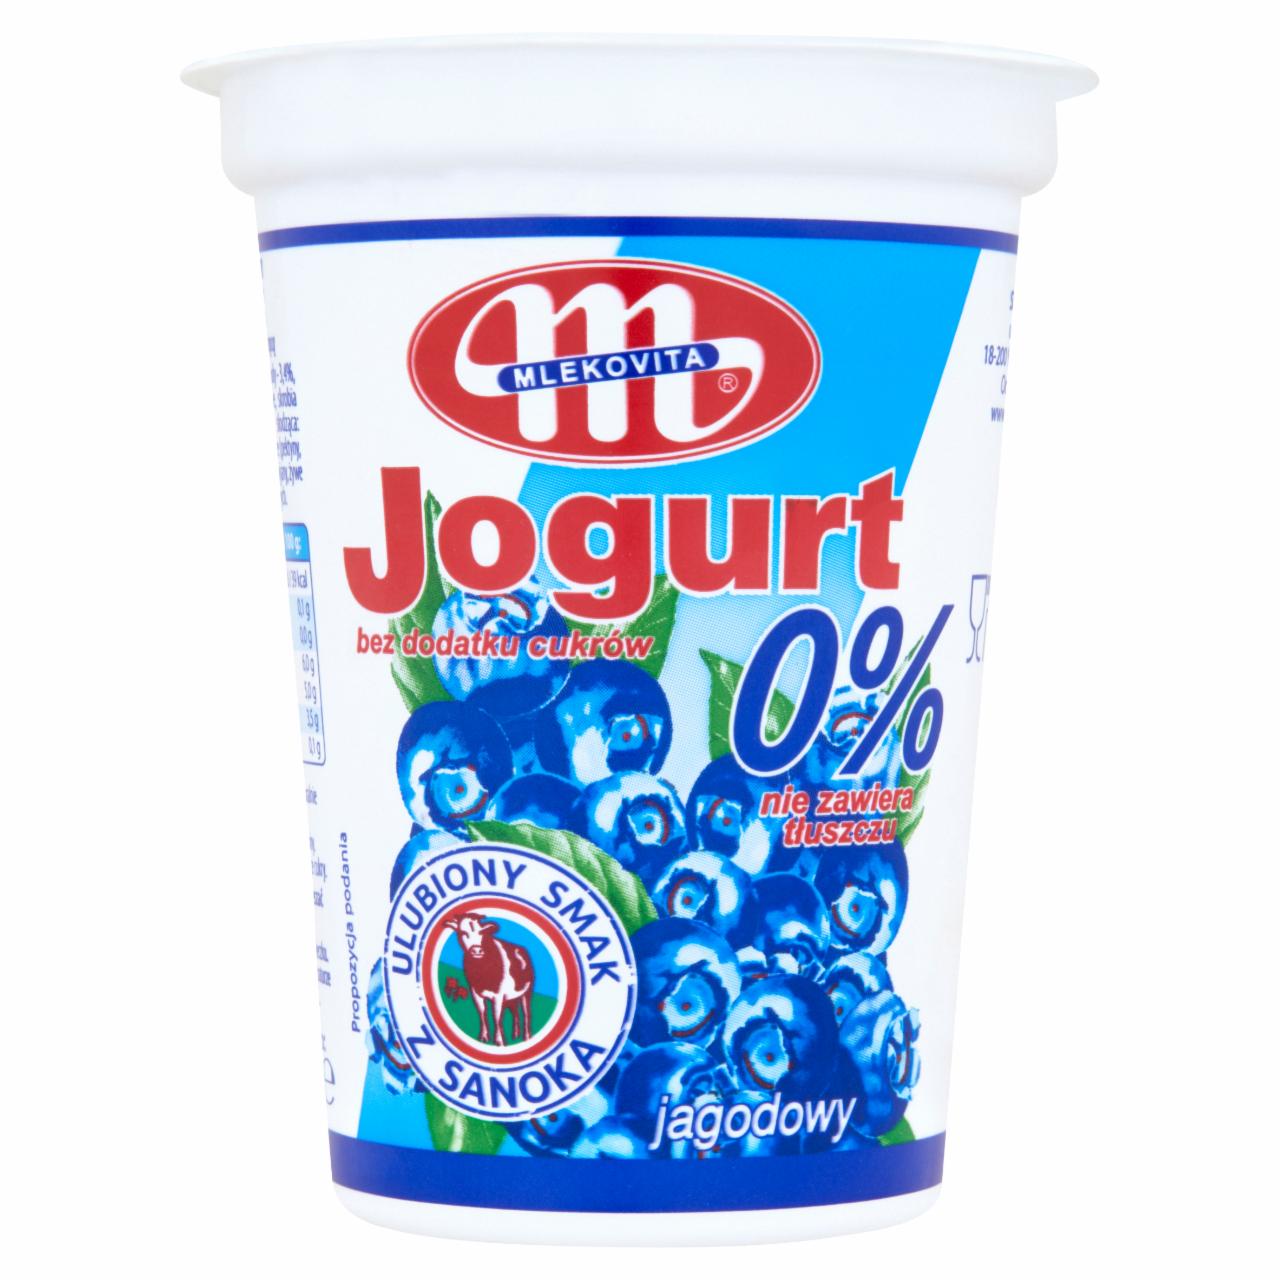 Zdjęcia - Mlekovita Jogurt 0% jagodowy 400 g